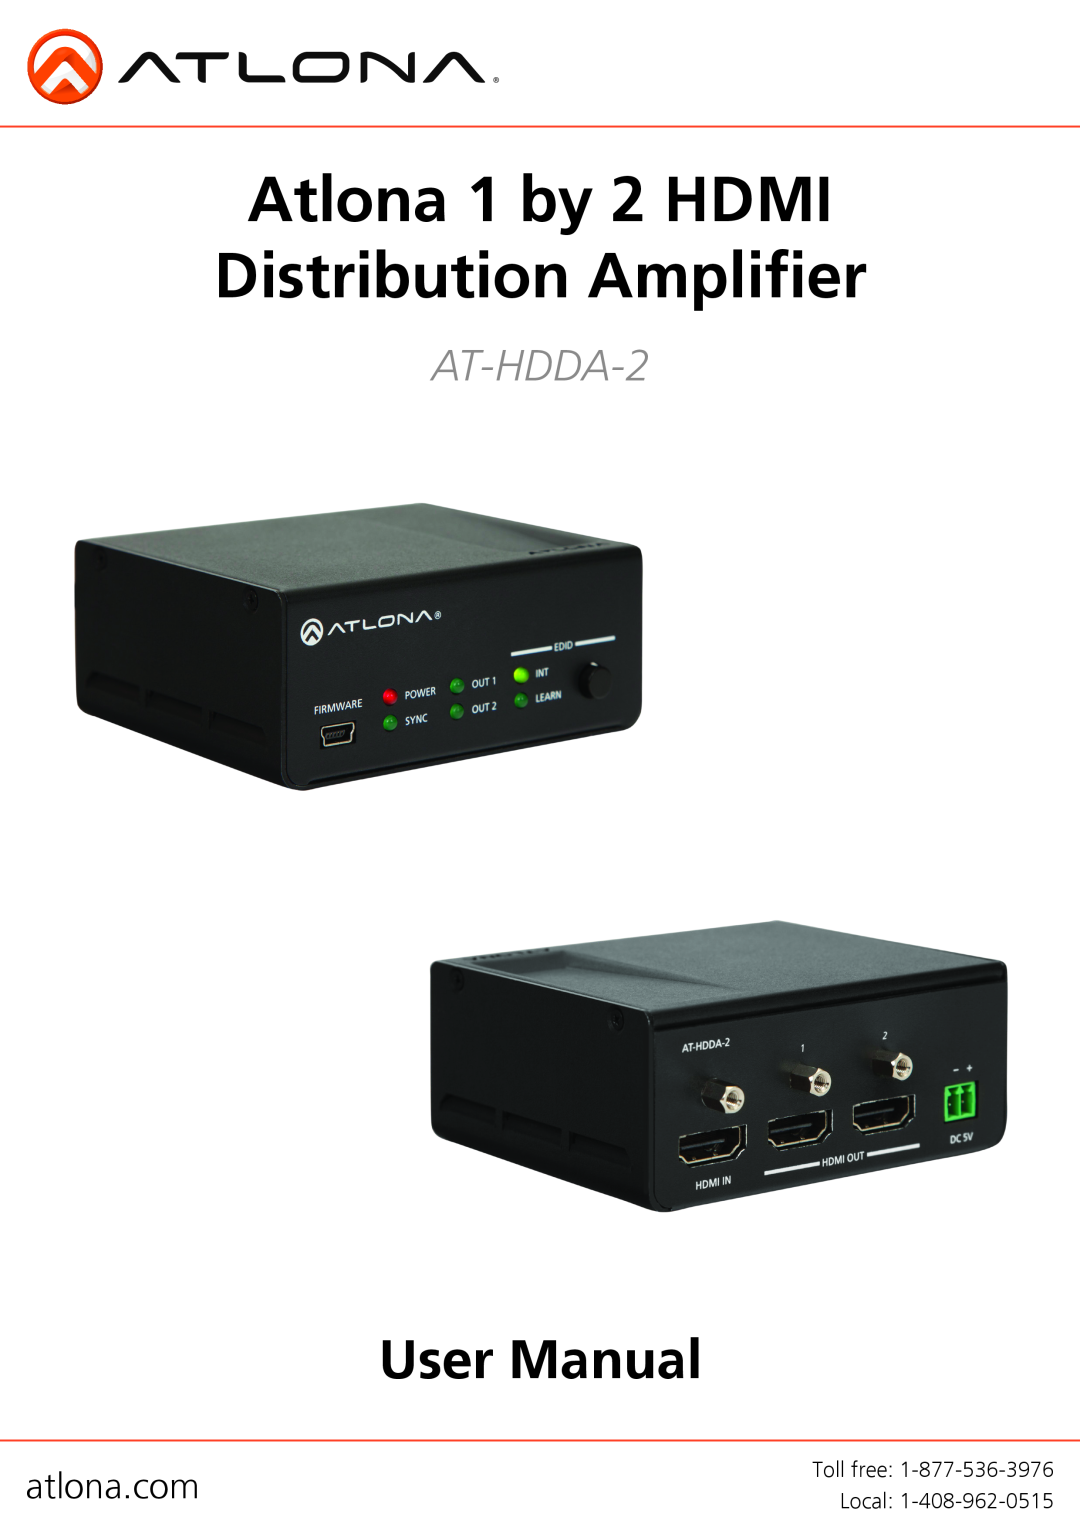 Atlona AT-HDDA-2 user manual atlona.com, Atlona 1 by 2 HDMI Distribution Amplifier 